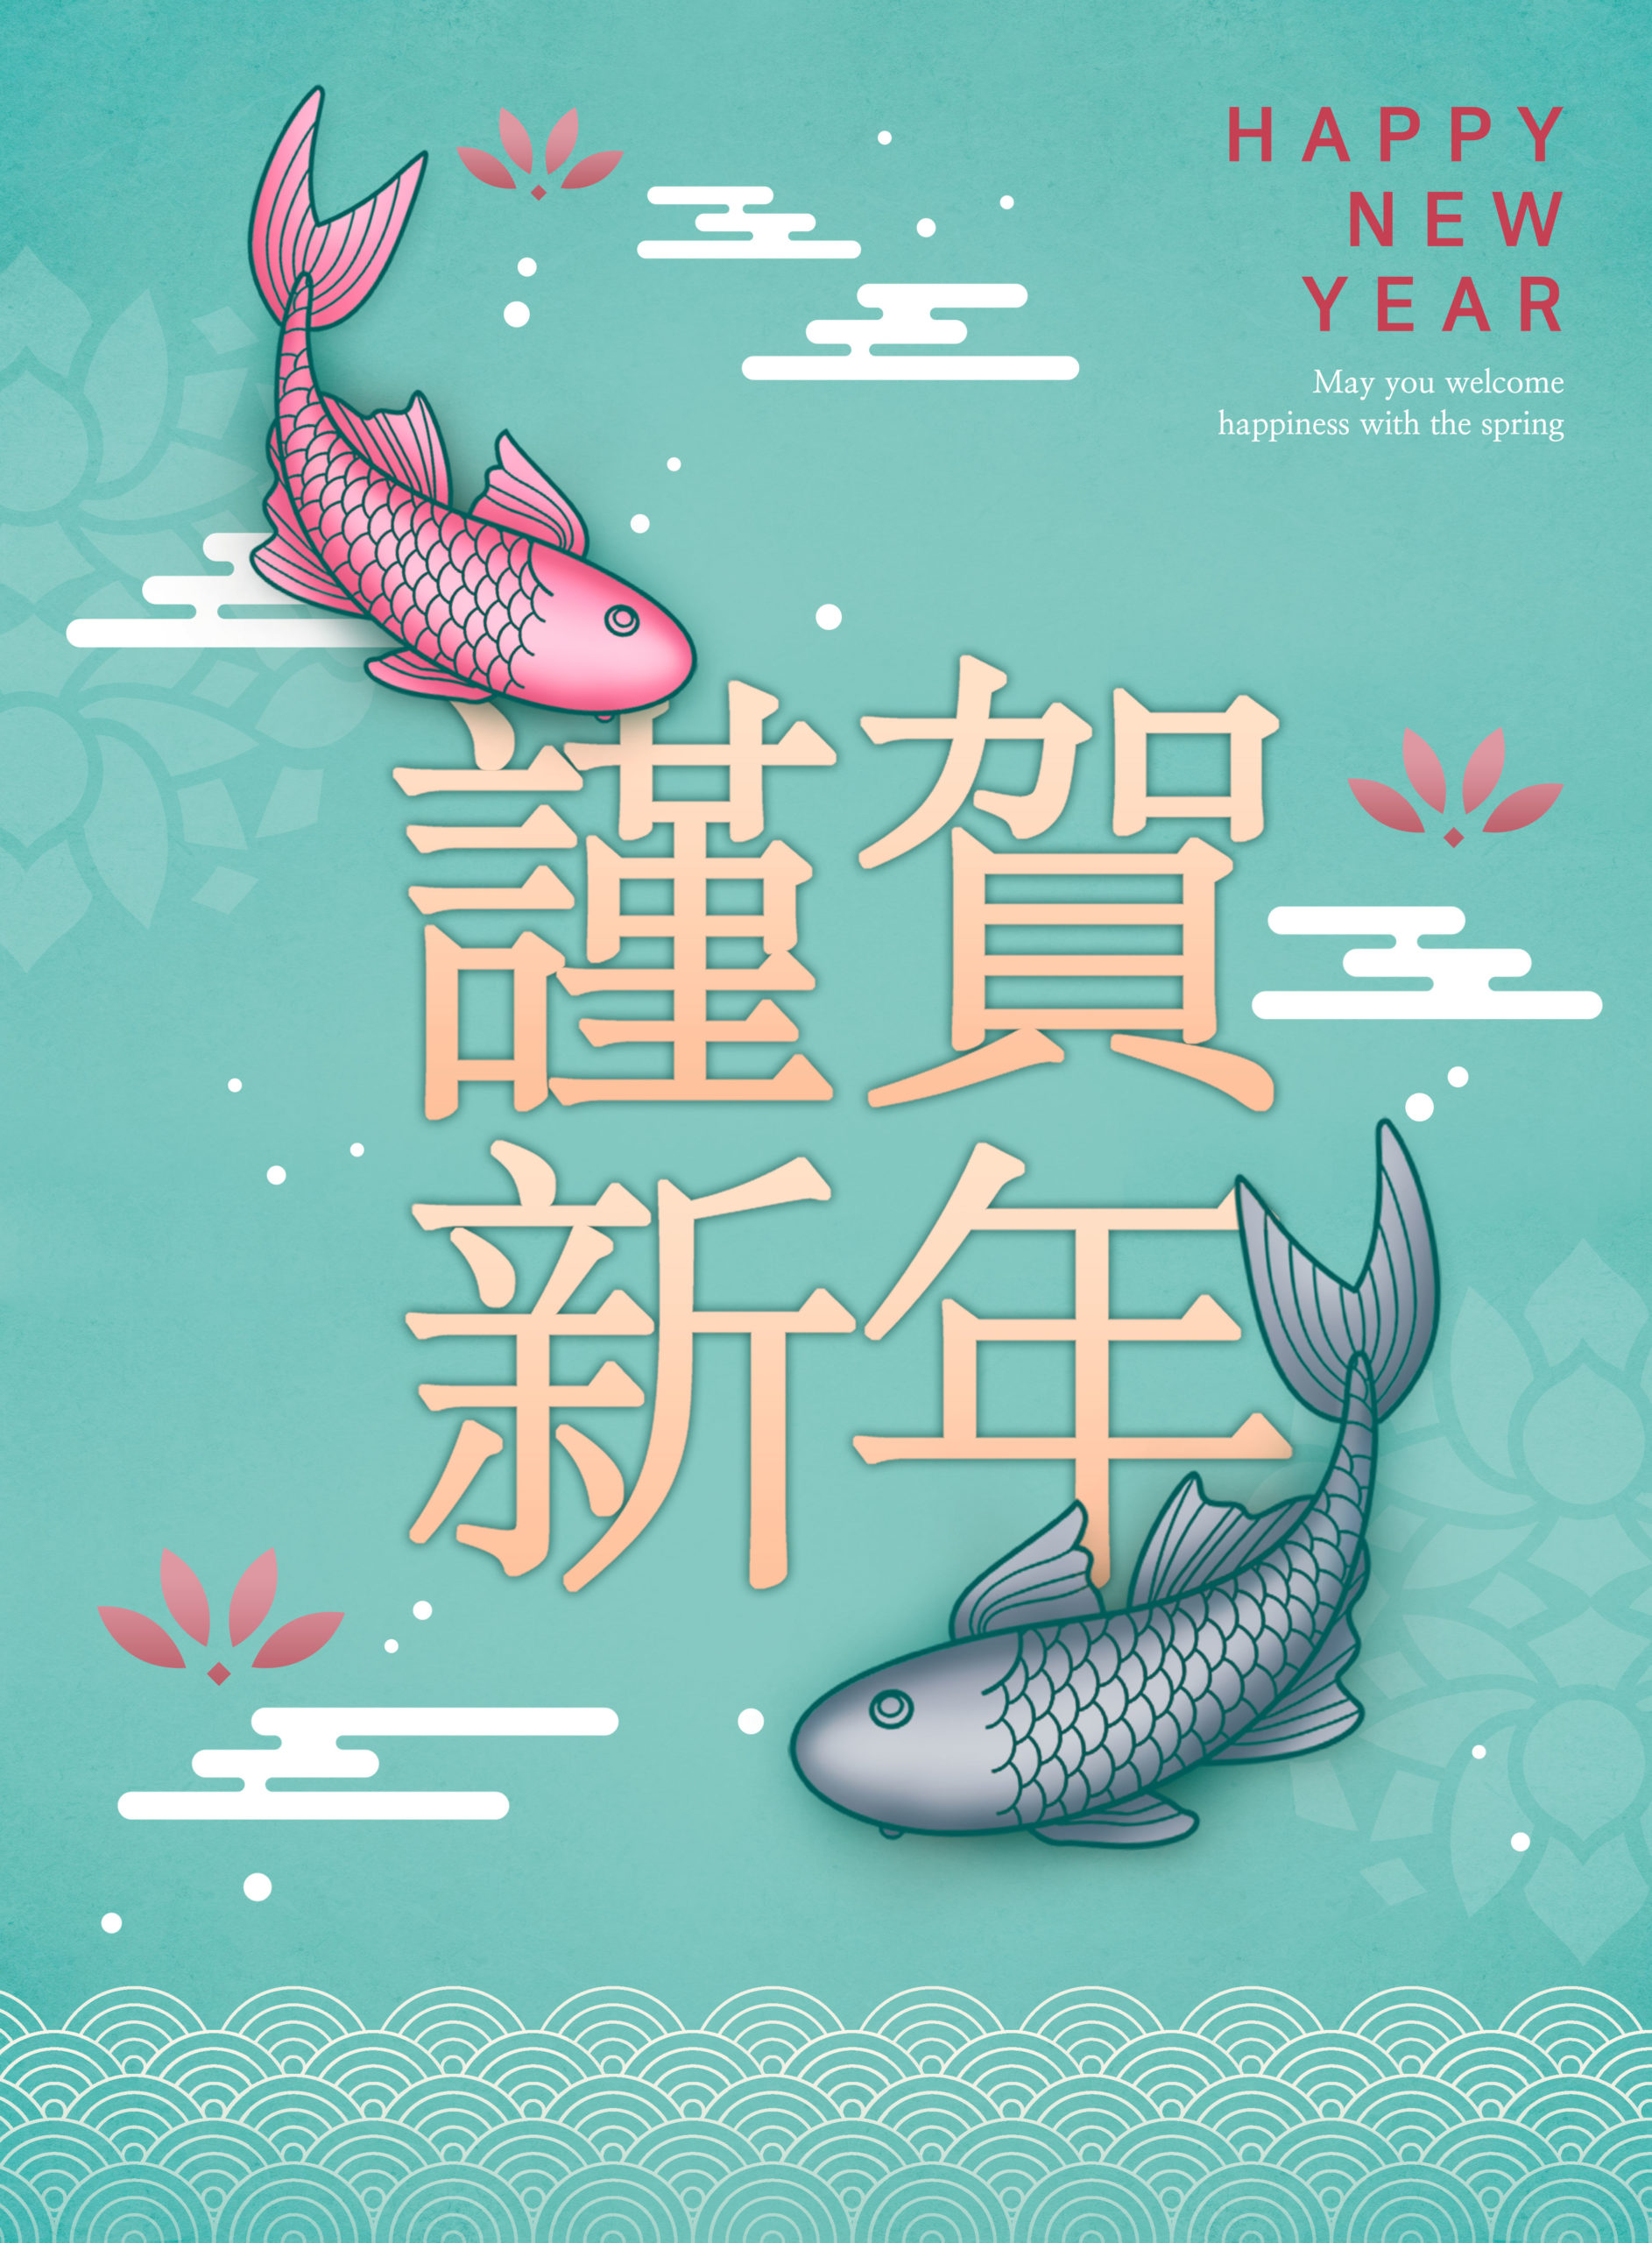 中国元素好运锦鲤新年主题海报PSD素材非凡图库精选模板插图